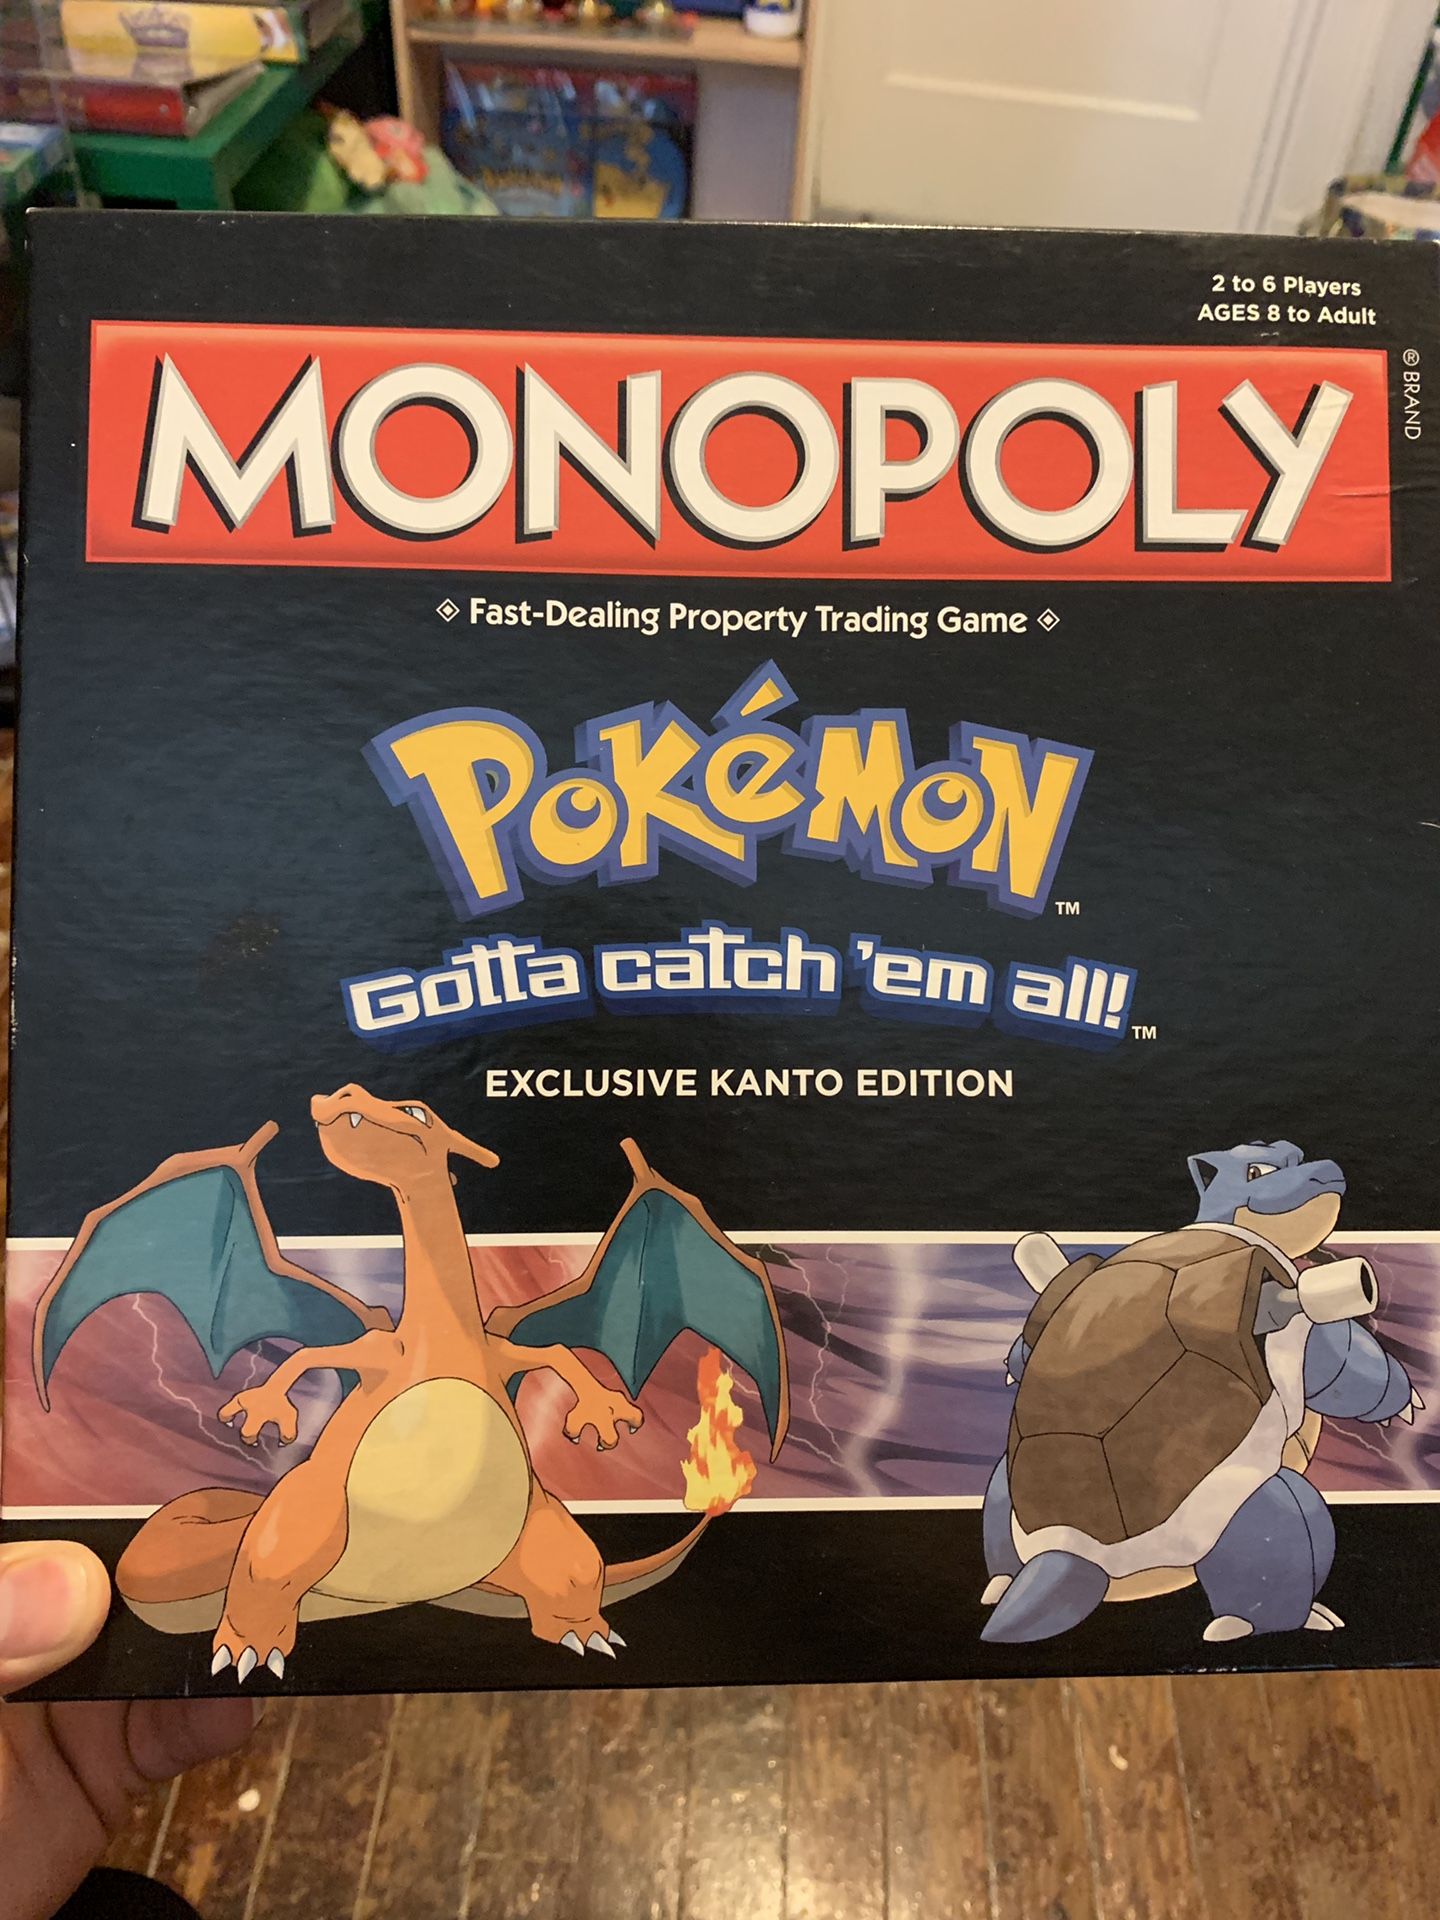 Pokémon Monopoly Exclusive Kanto Edition